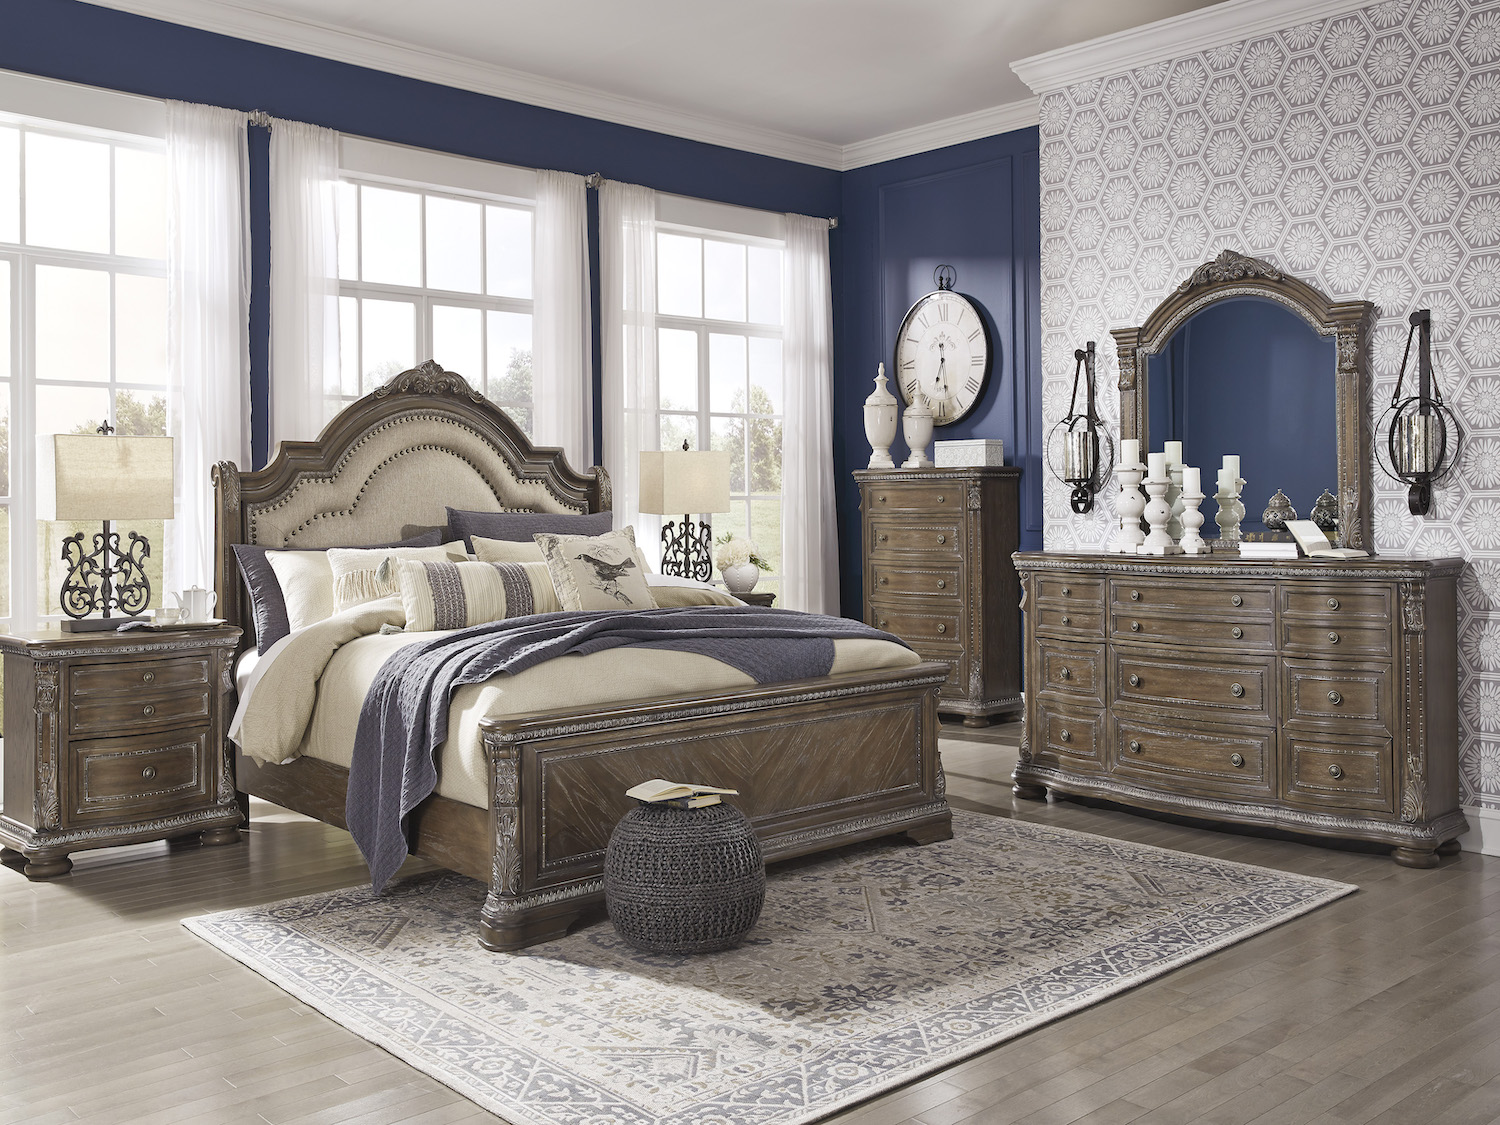 Charmond 5 Pc Queen Bedroom Set, Ornate Queen Bedroom Sets